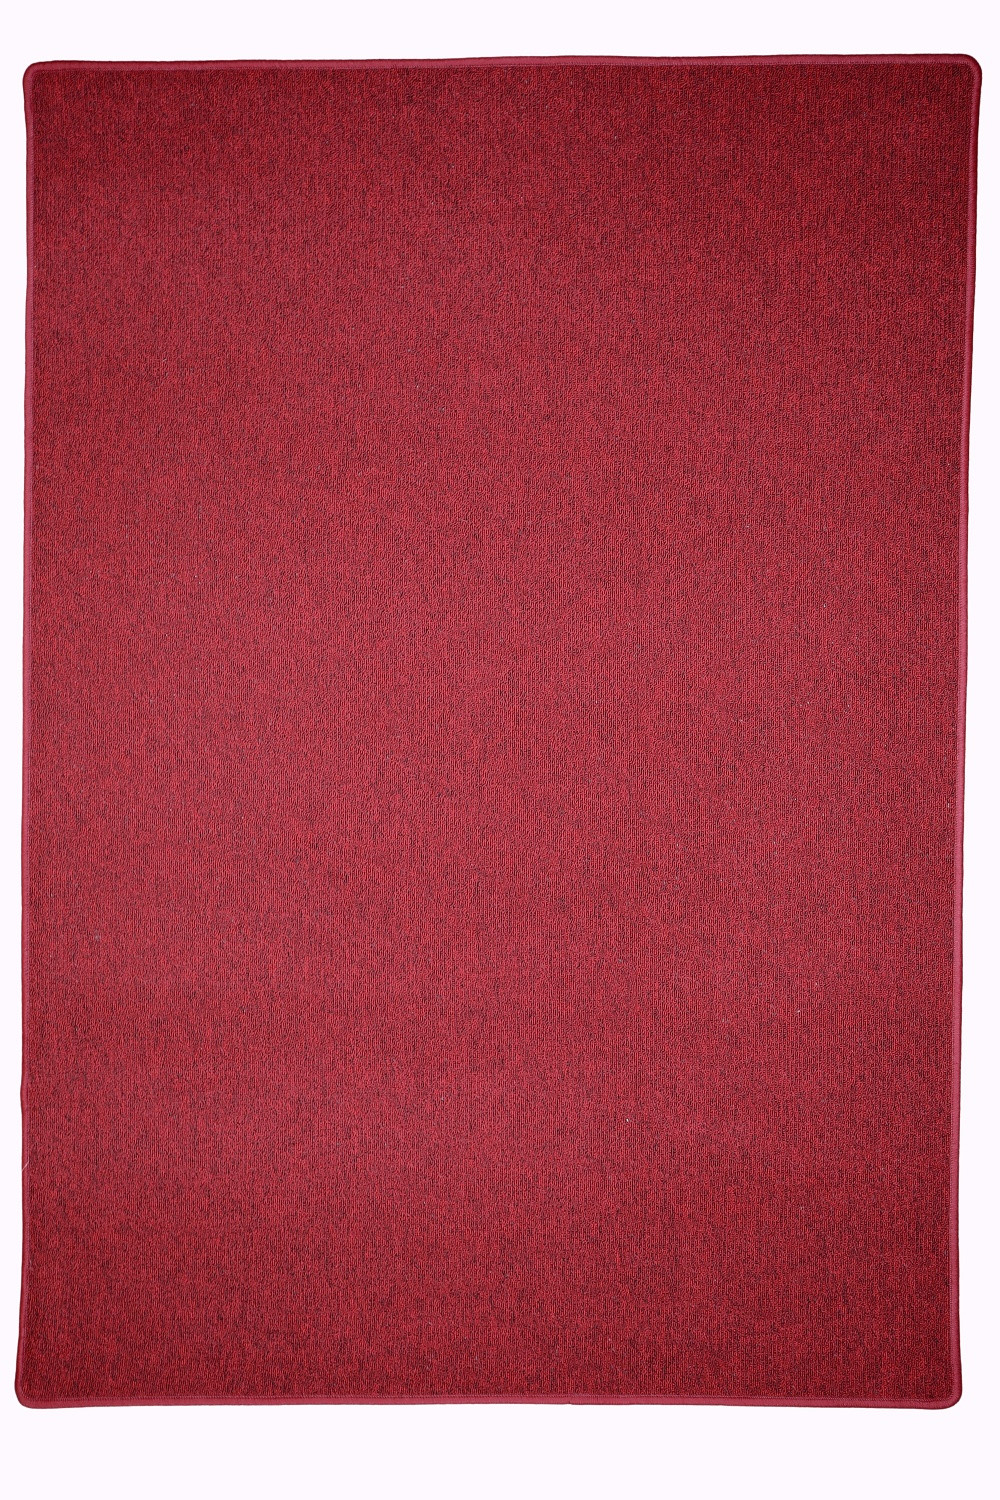 Kusový koberec Astra červená - 160x240 cm Vopi koberce 